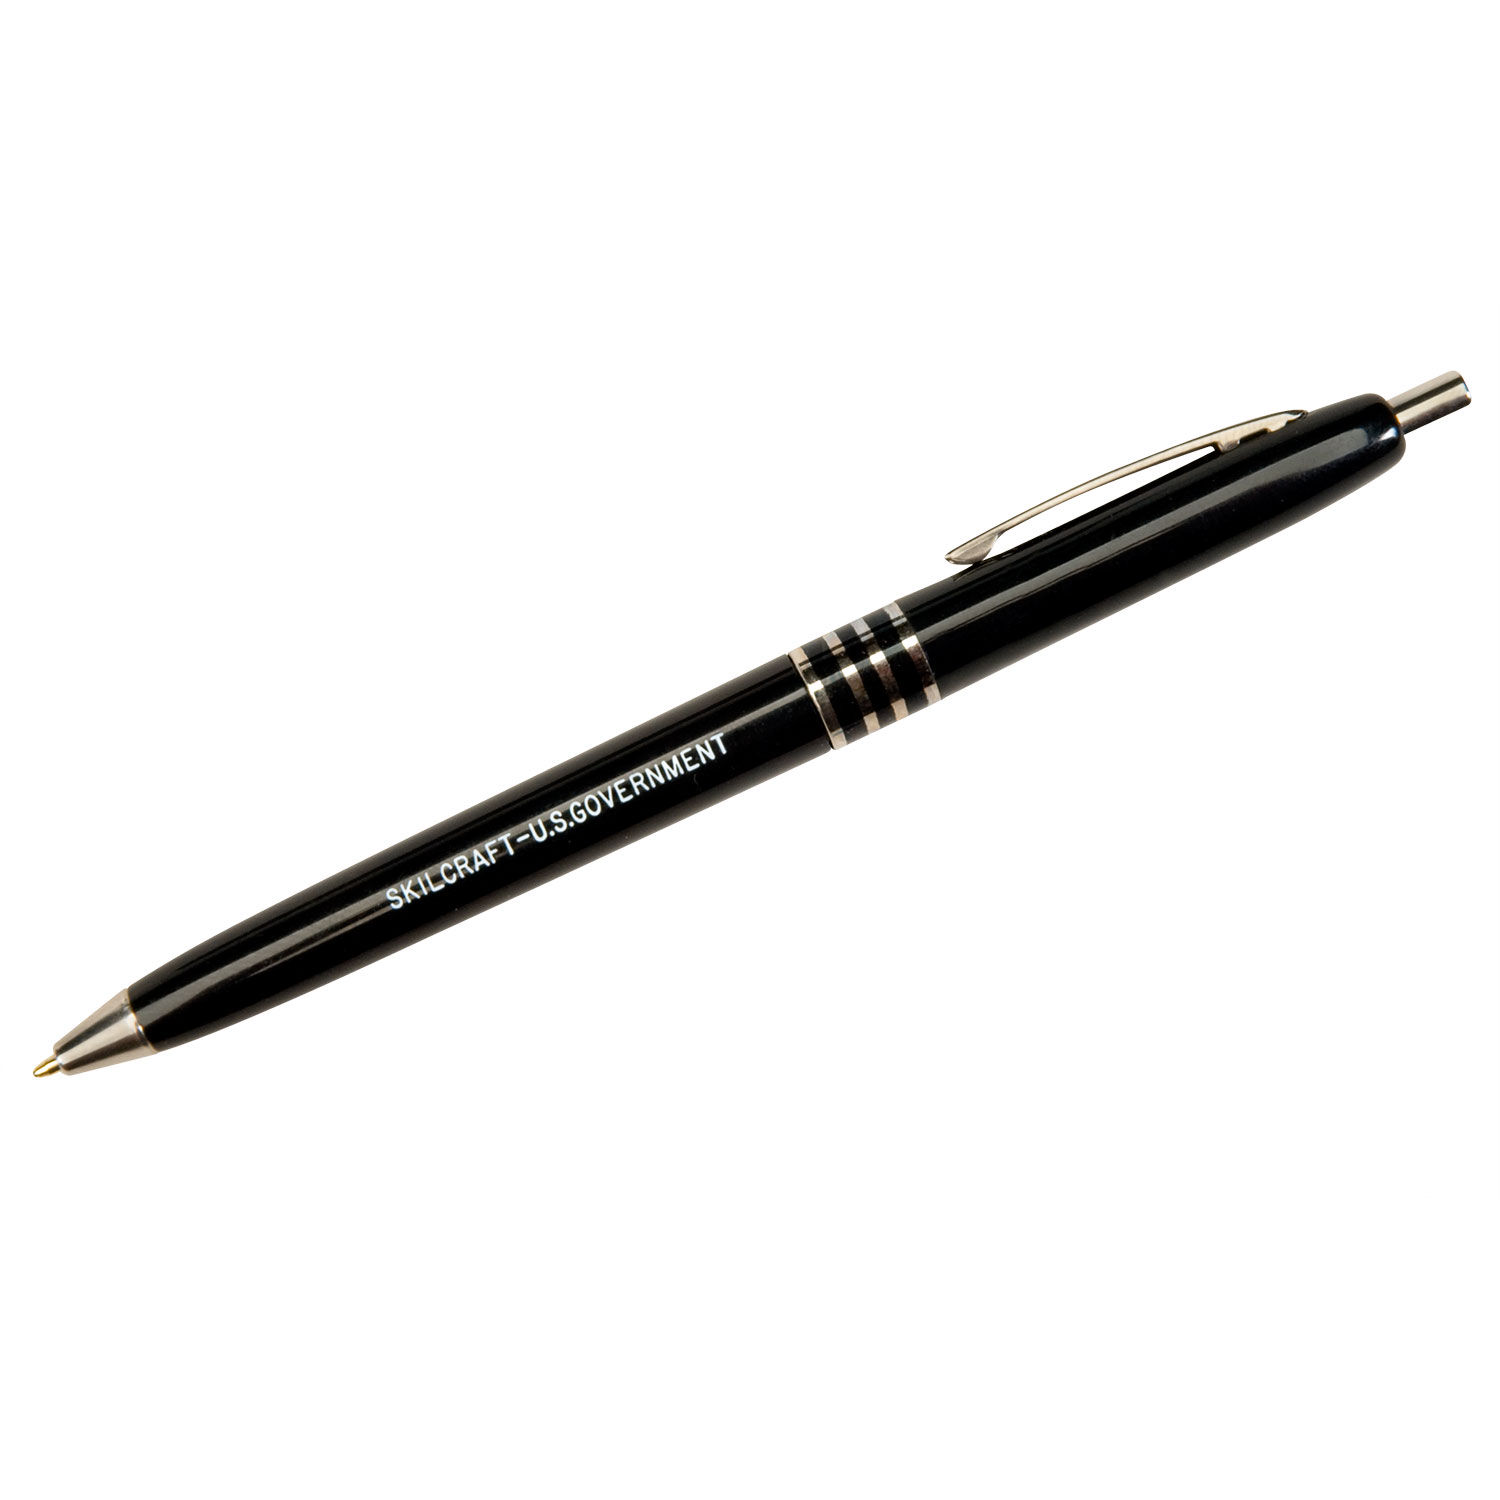 Skilcraft Push Cap Bp Pen Retractable Medium 1 Mm Black Ink Barrel